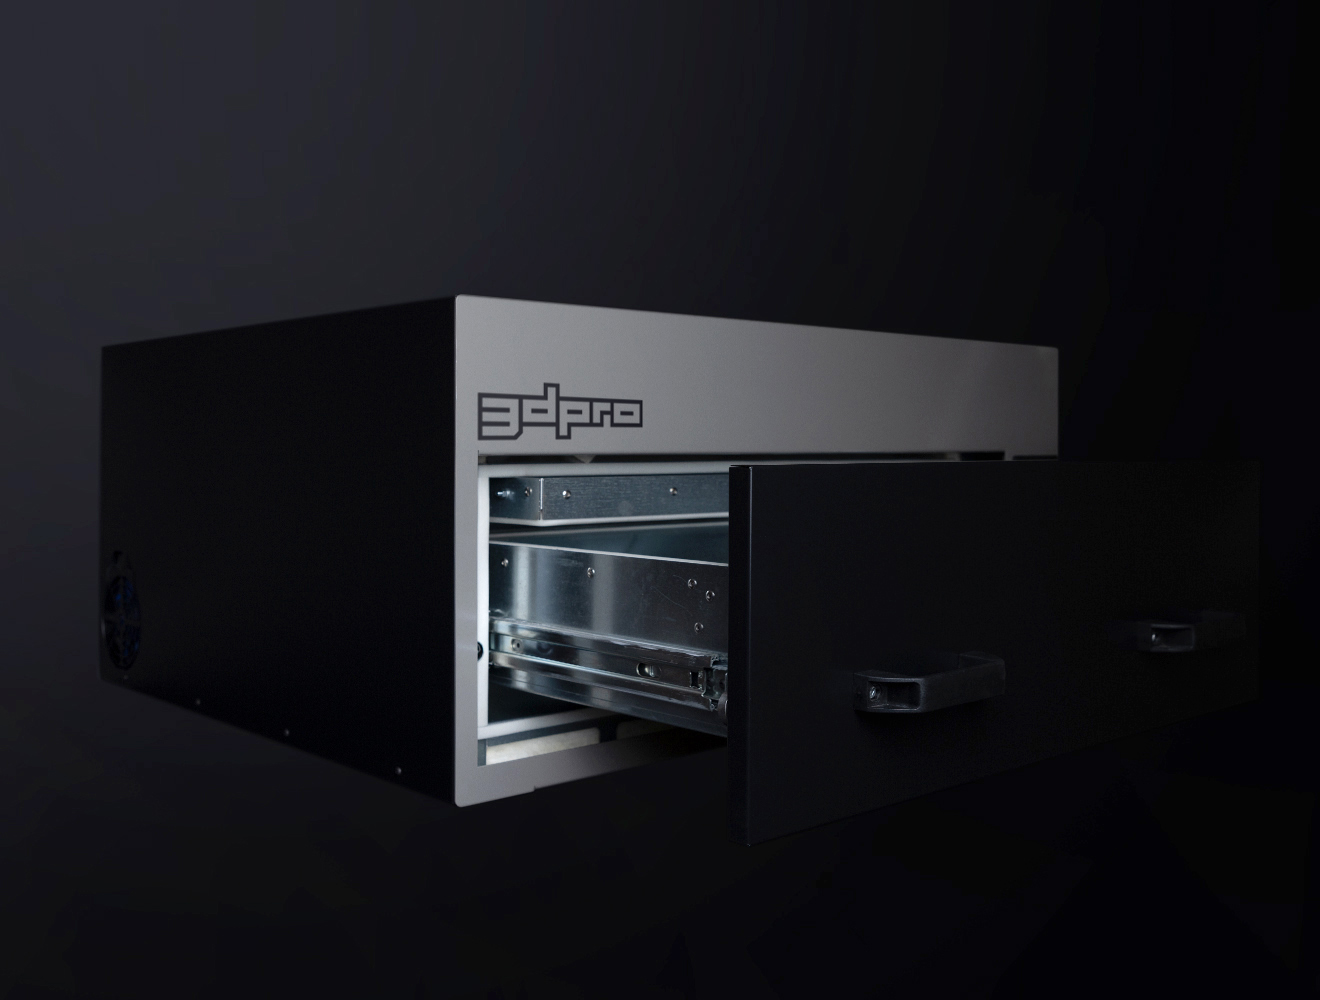 3D PRO Vacuum Sublimation Oven Open View